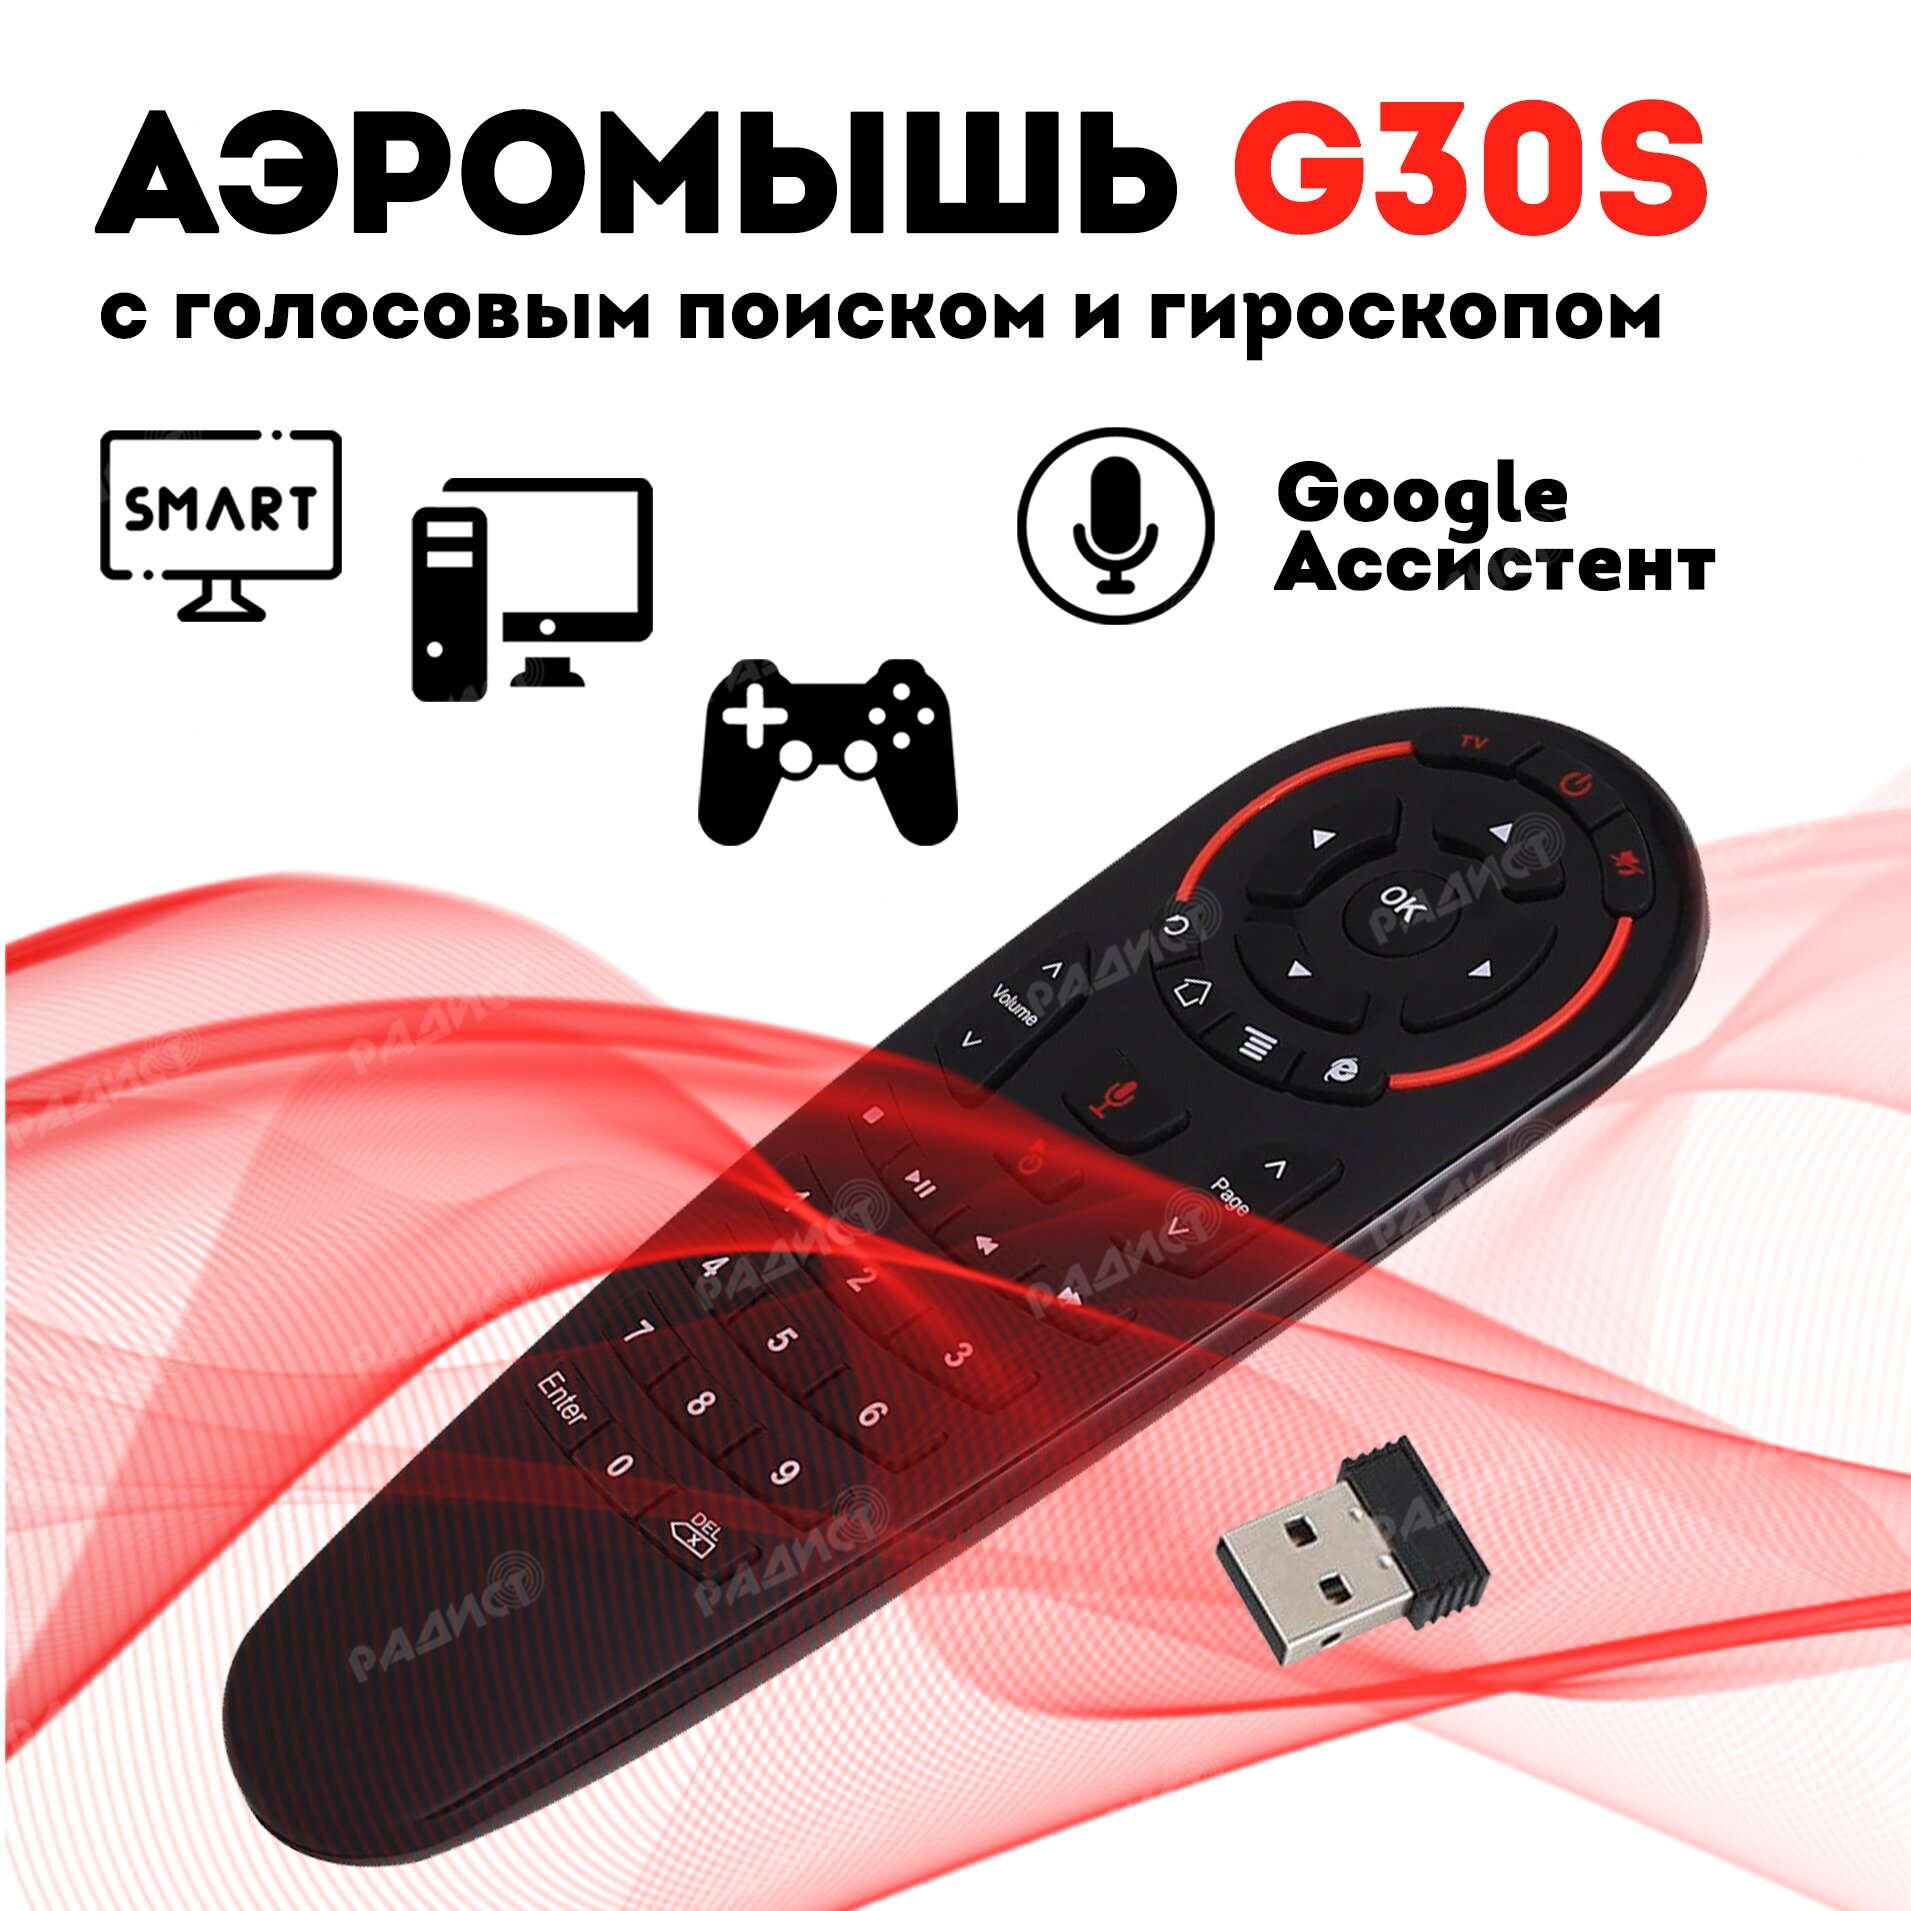 Пульт с гироскопом Air Mouse G30S для Android TV(голосовым управлением)